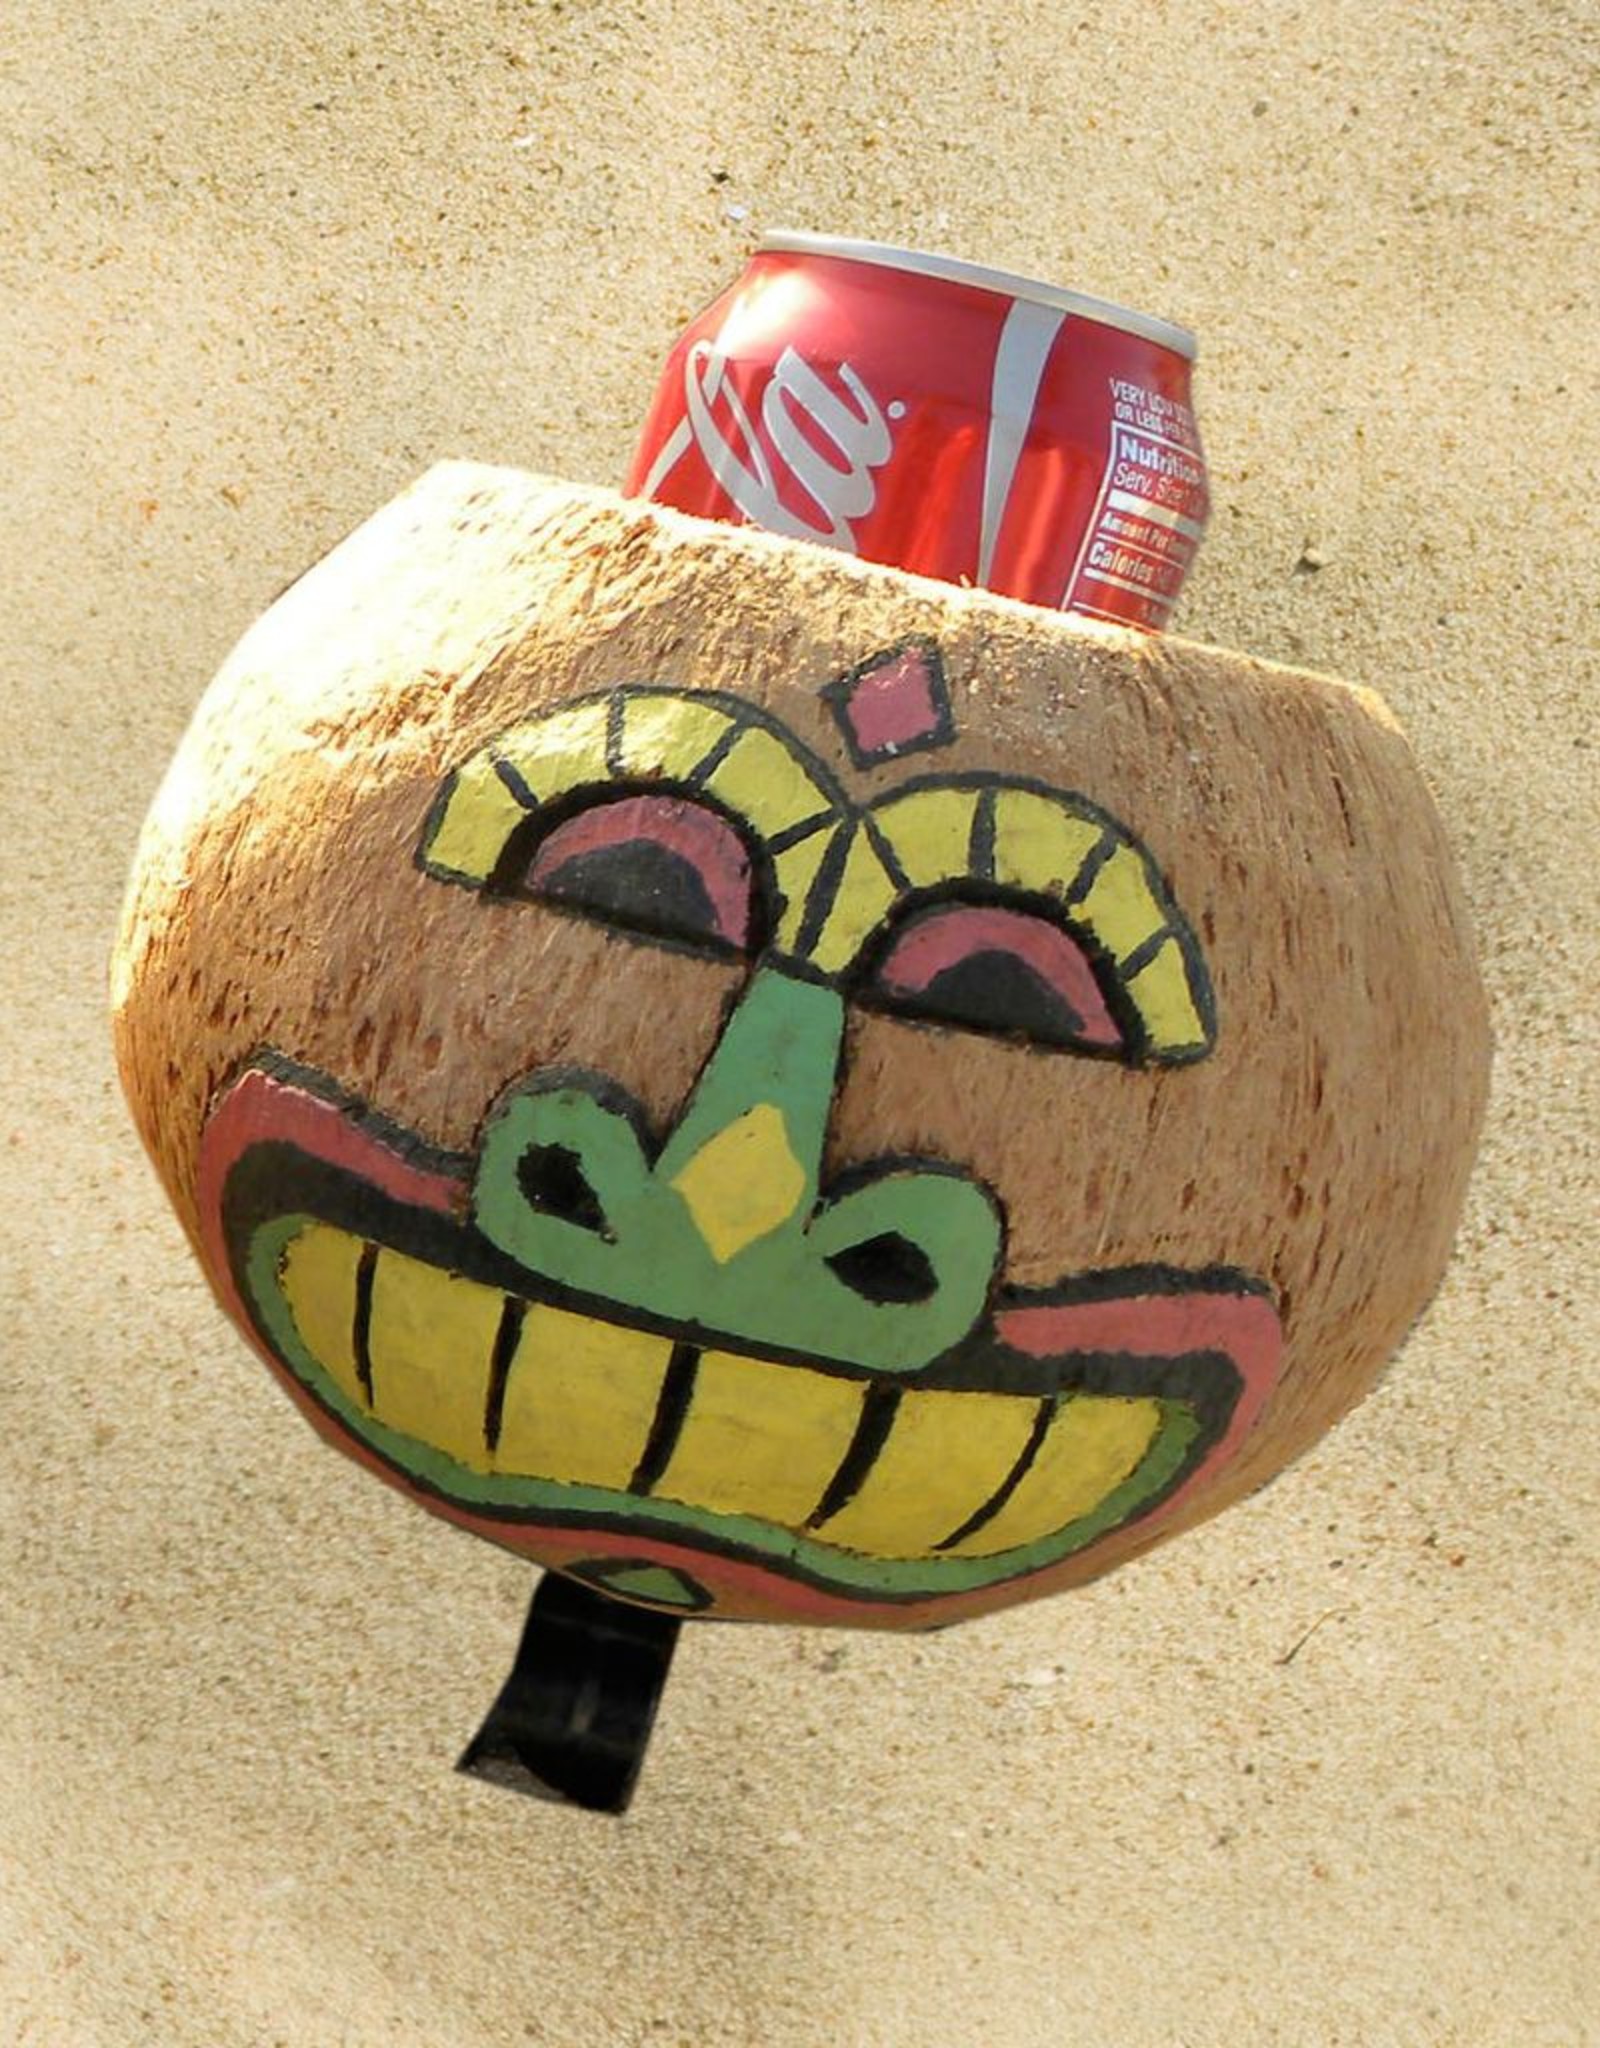 coconut drink holder for bike